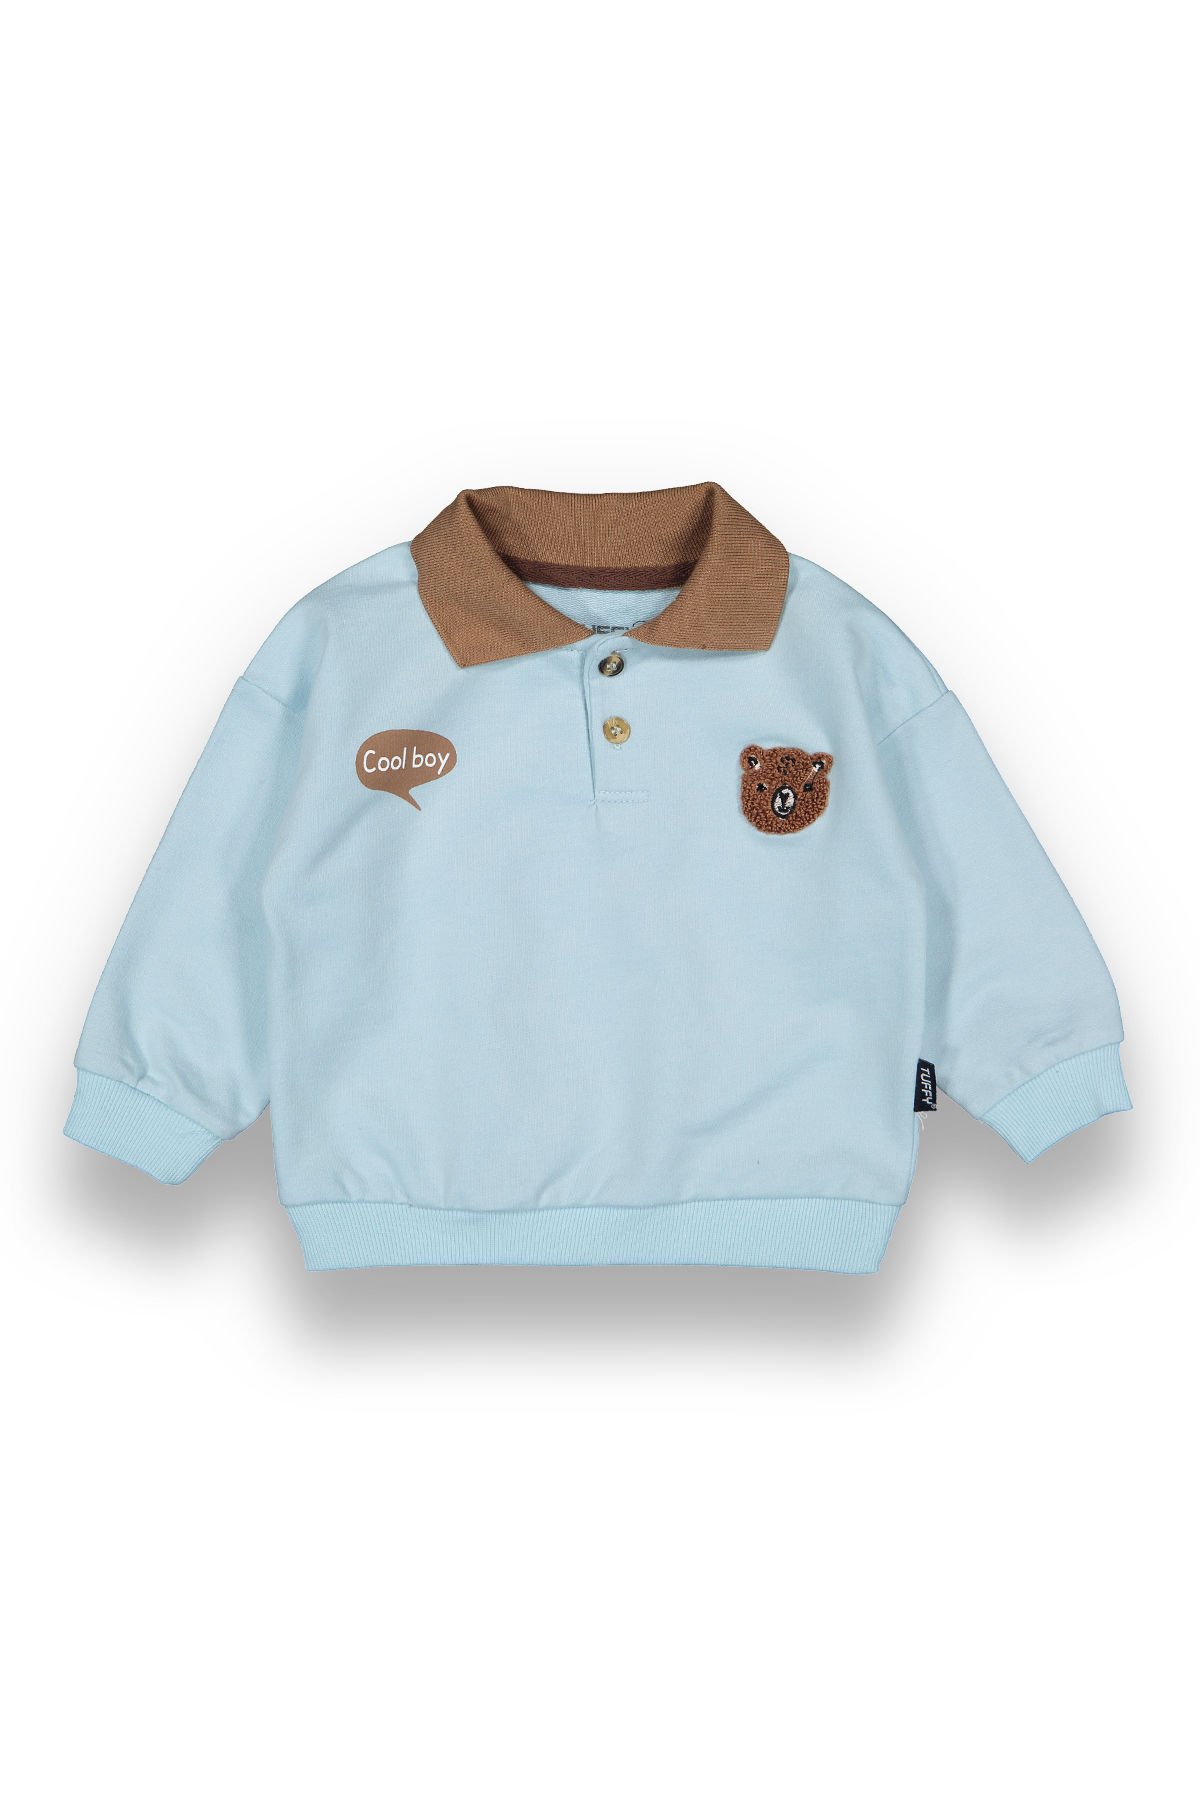 Tuffy Cool Boy Baskılı Erkek Bebek Sweatshirt - 7004